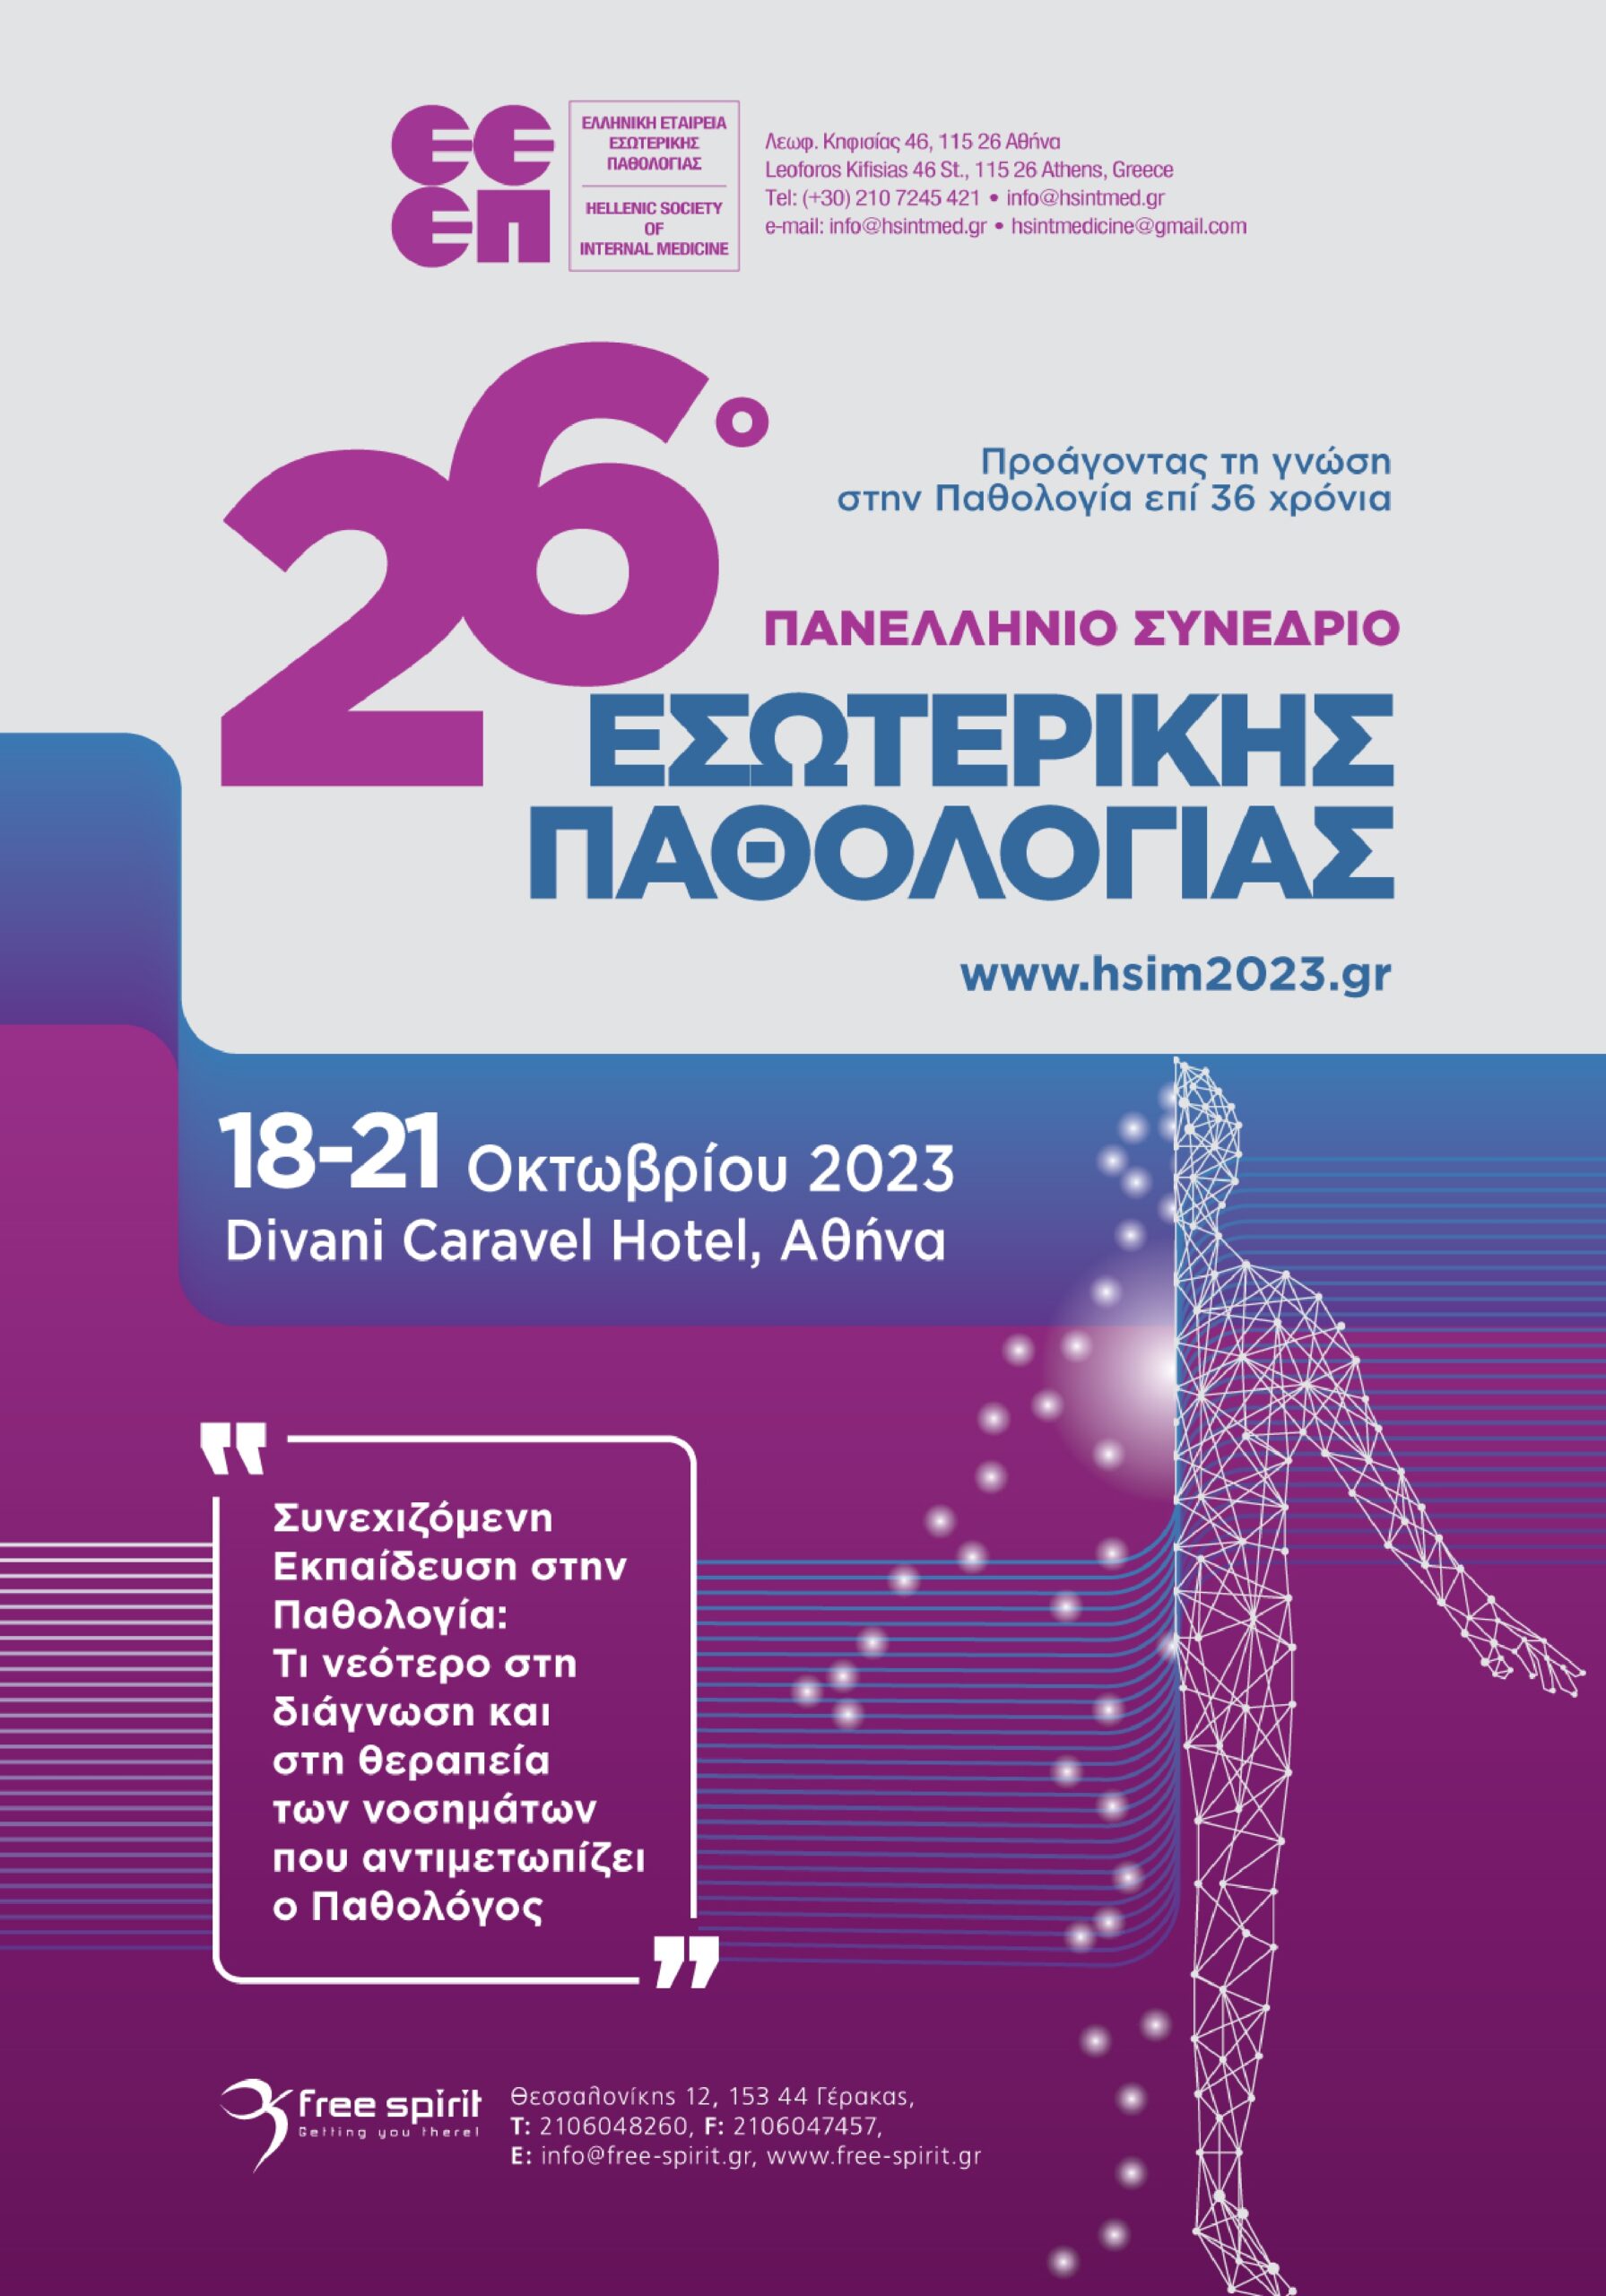 26ο Πανελλήνιο Συνέδριο Εσωτερικής Παθολογίας, 18-21 Οκτωβρίου 2023 (Divani Caravel, Αθήνα)